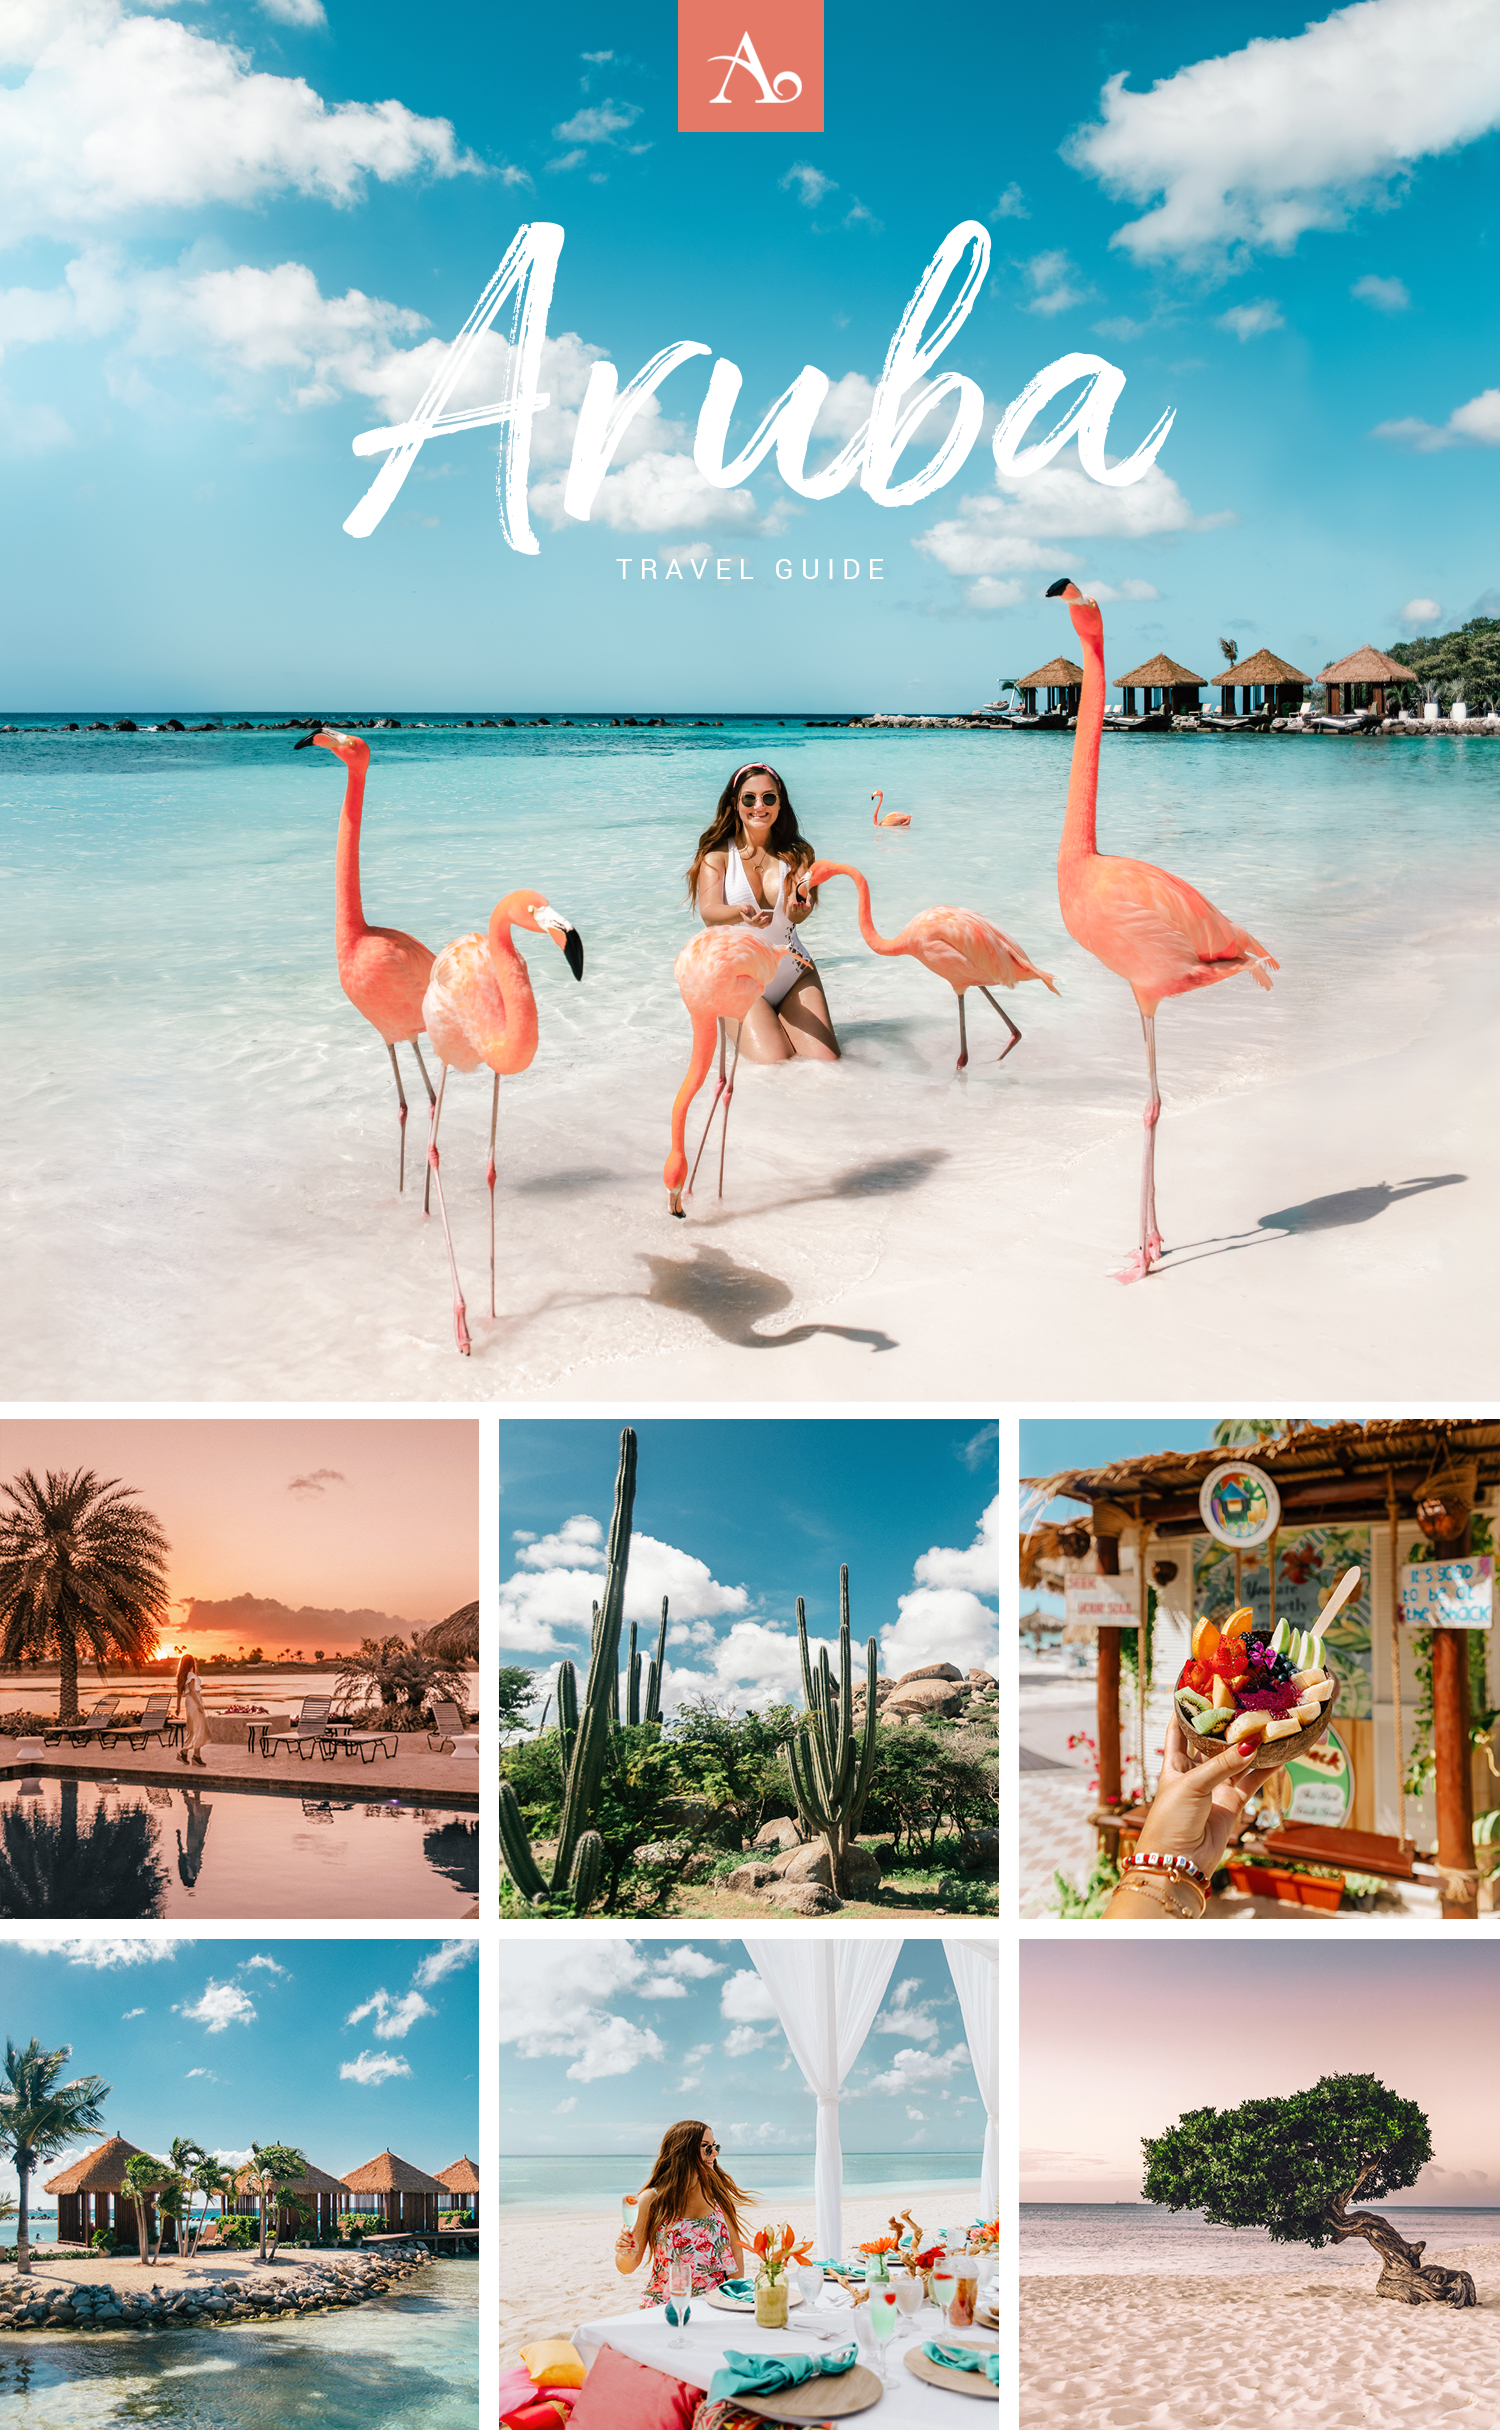 aruba tourism guide